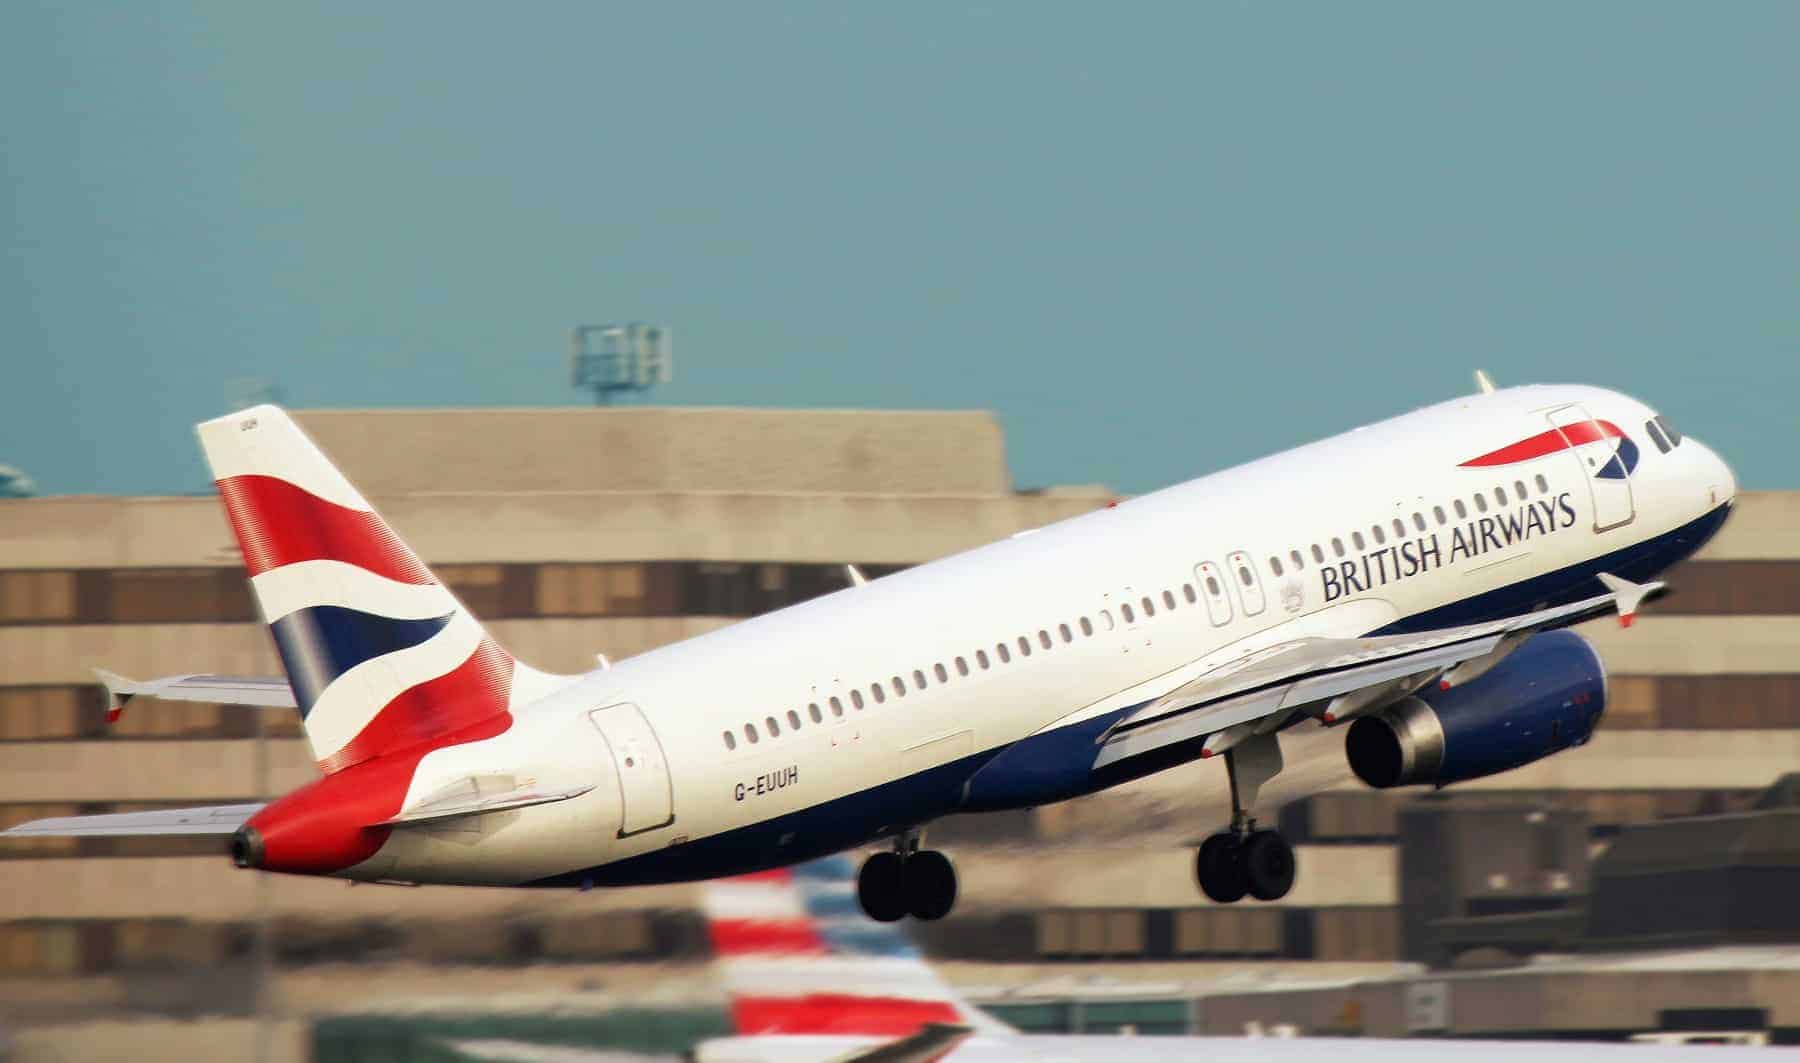 British airways security breach